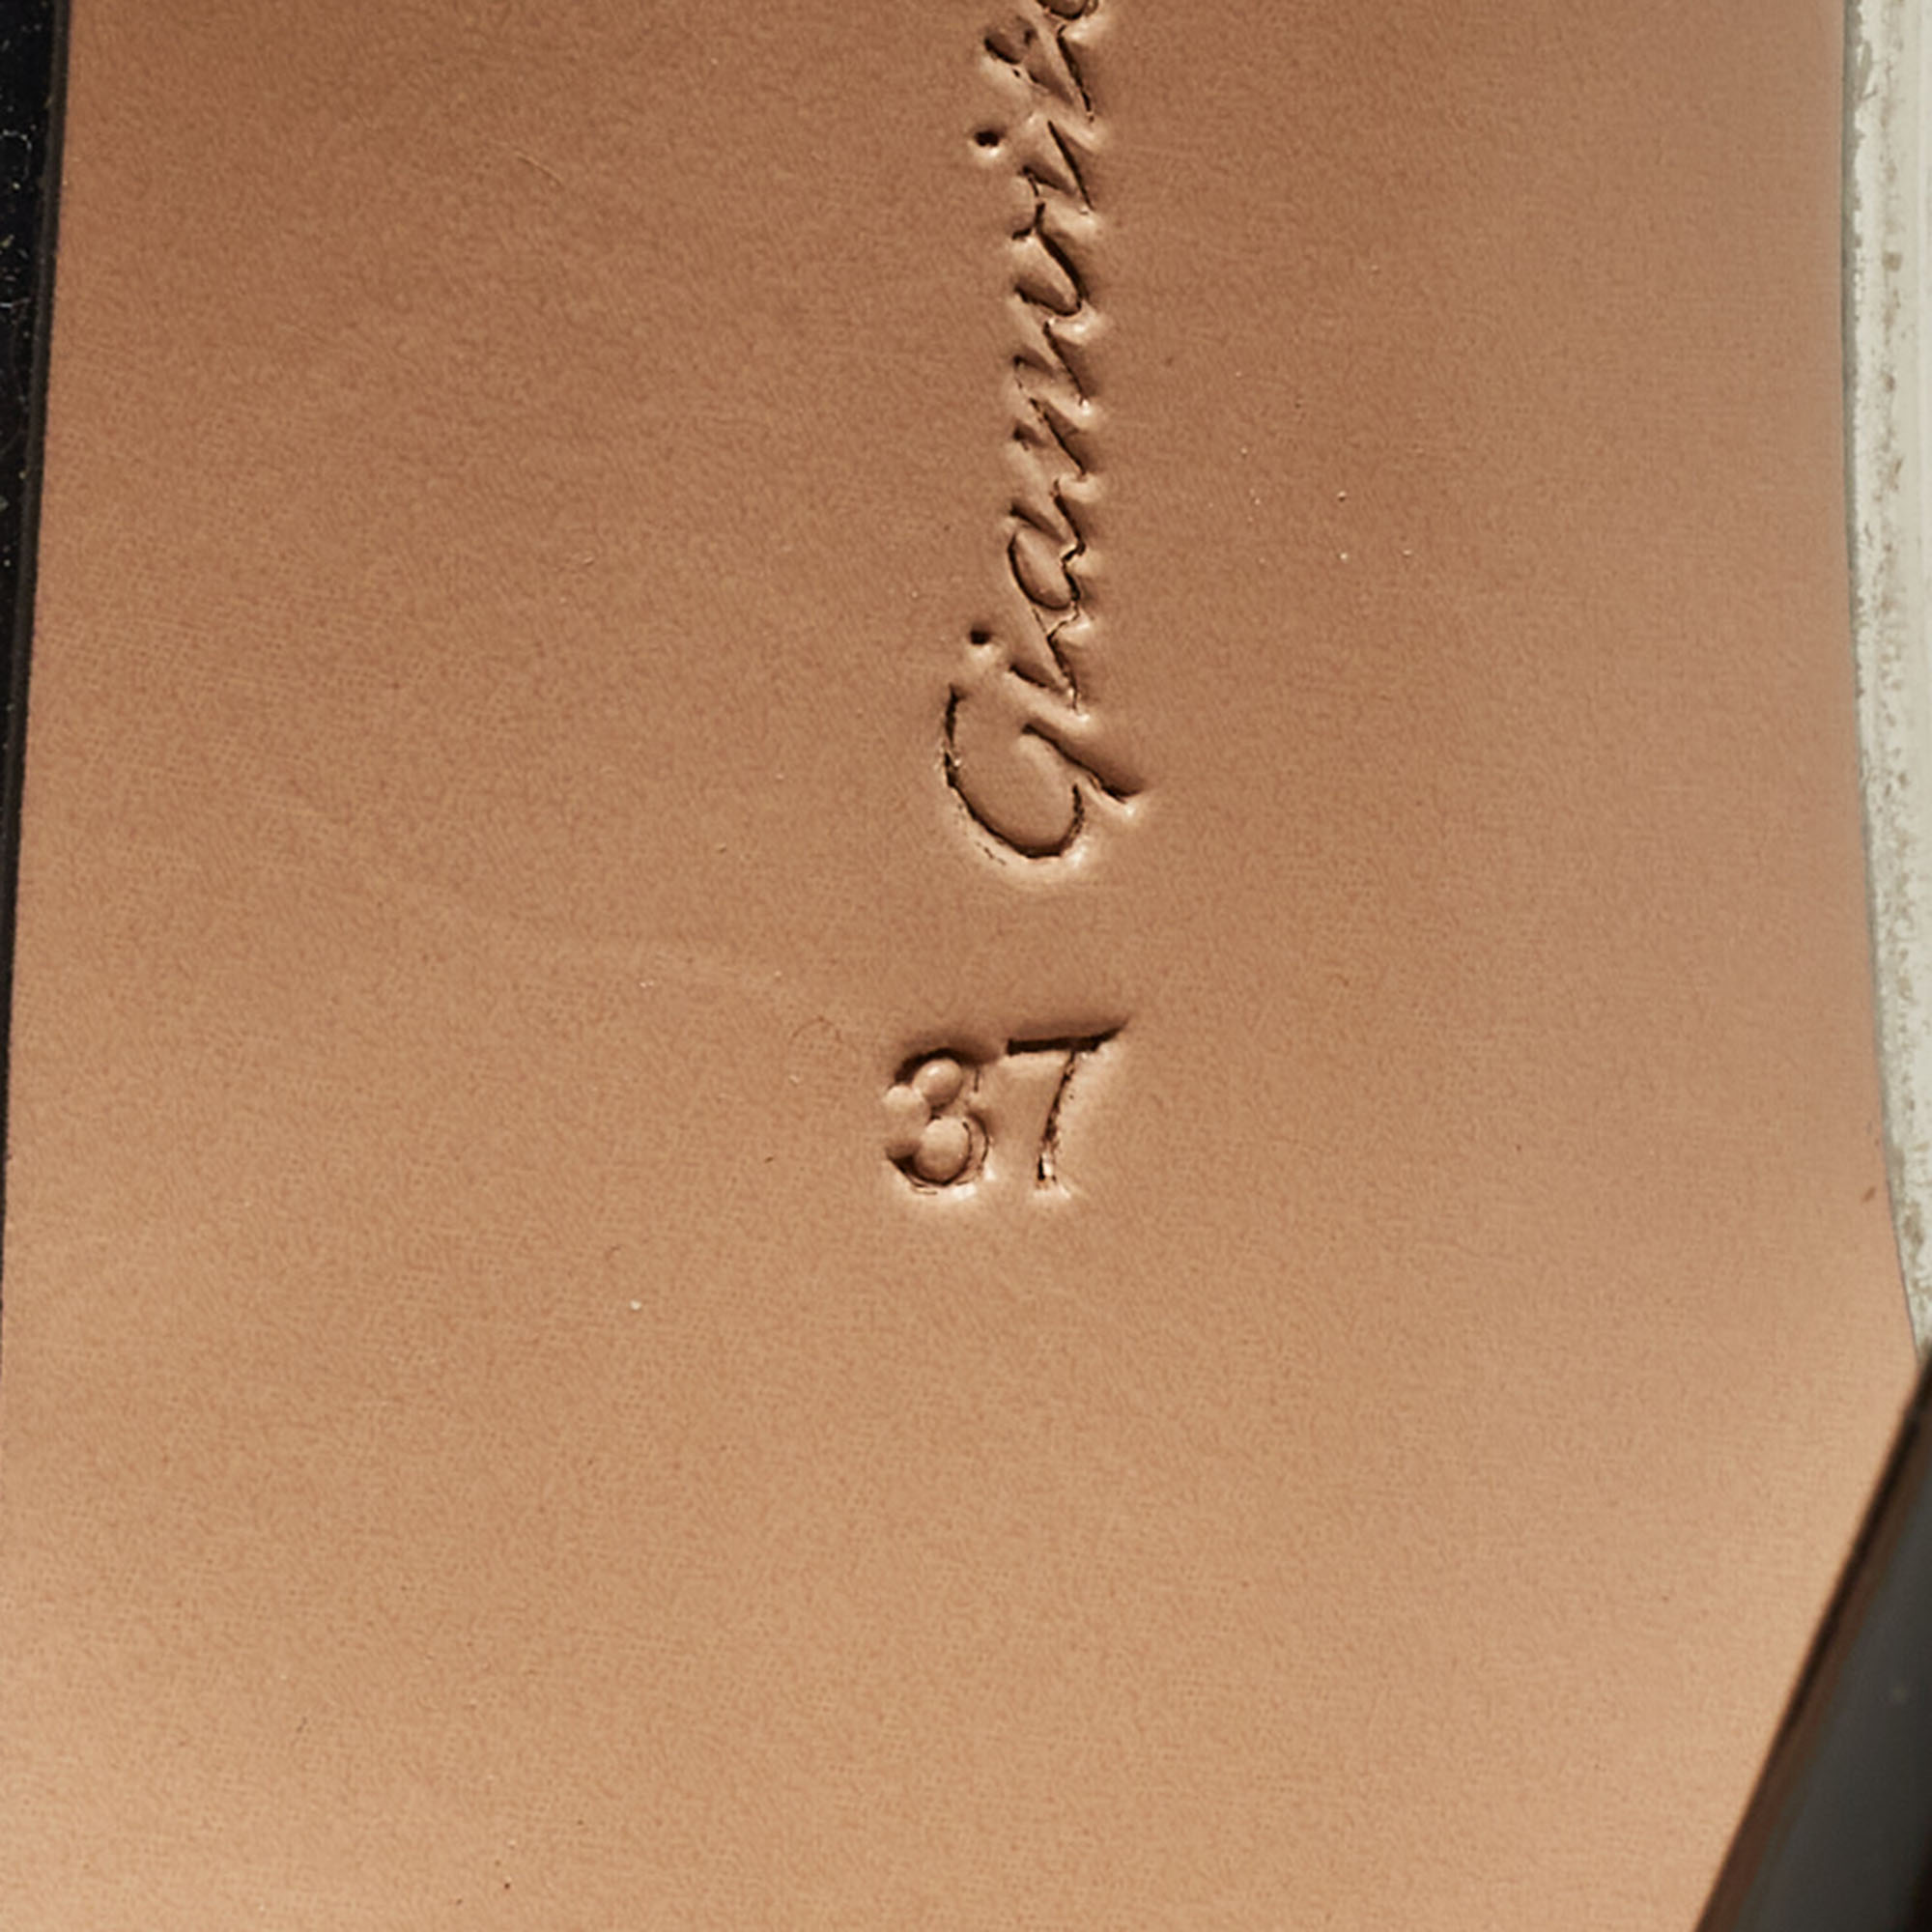 Gianvito Rossi Black Patent Leather And PVC Plexi Pumps Size 37